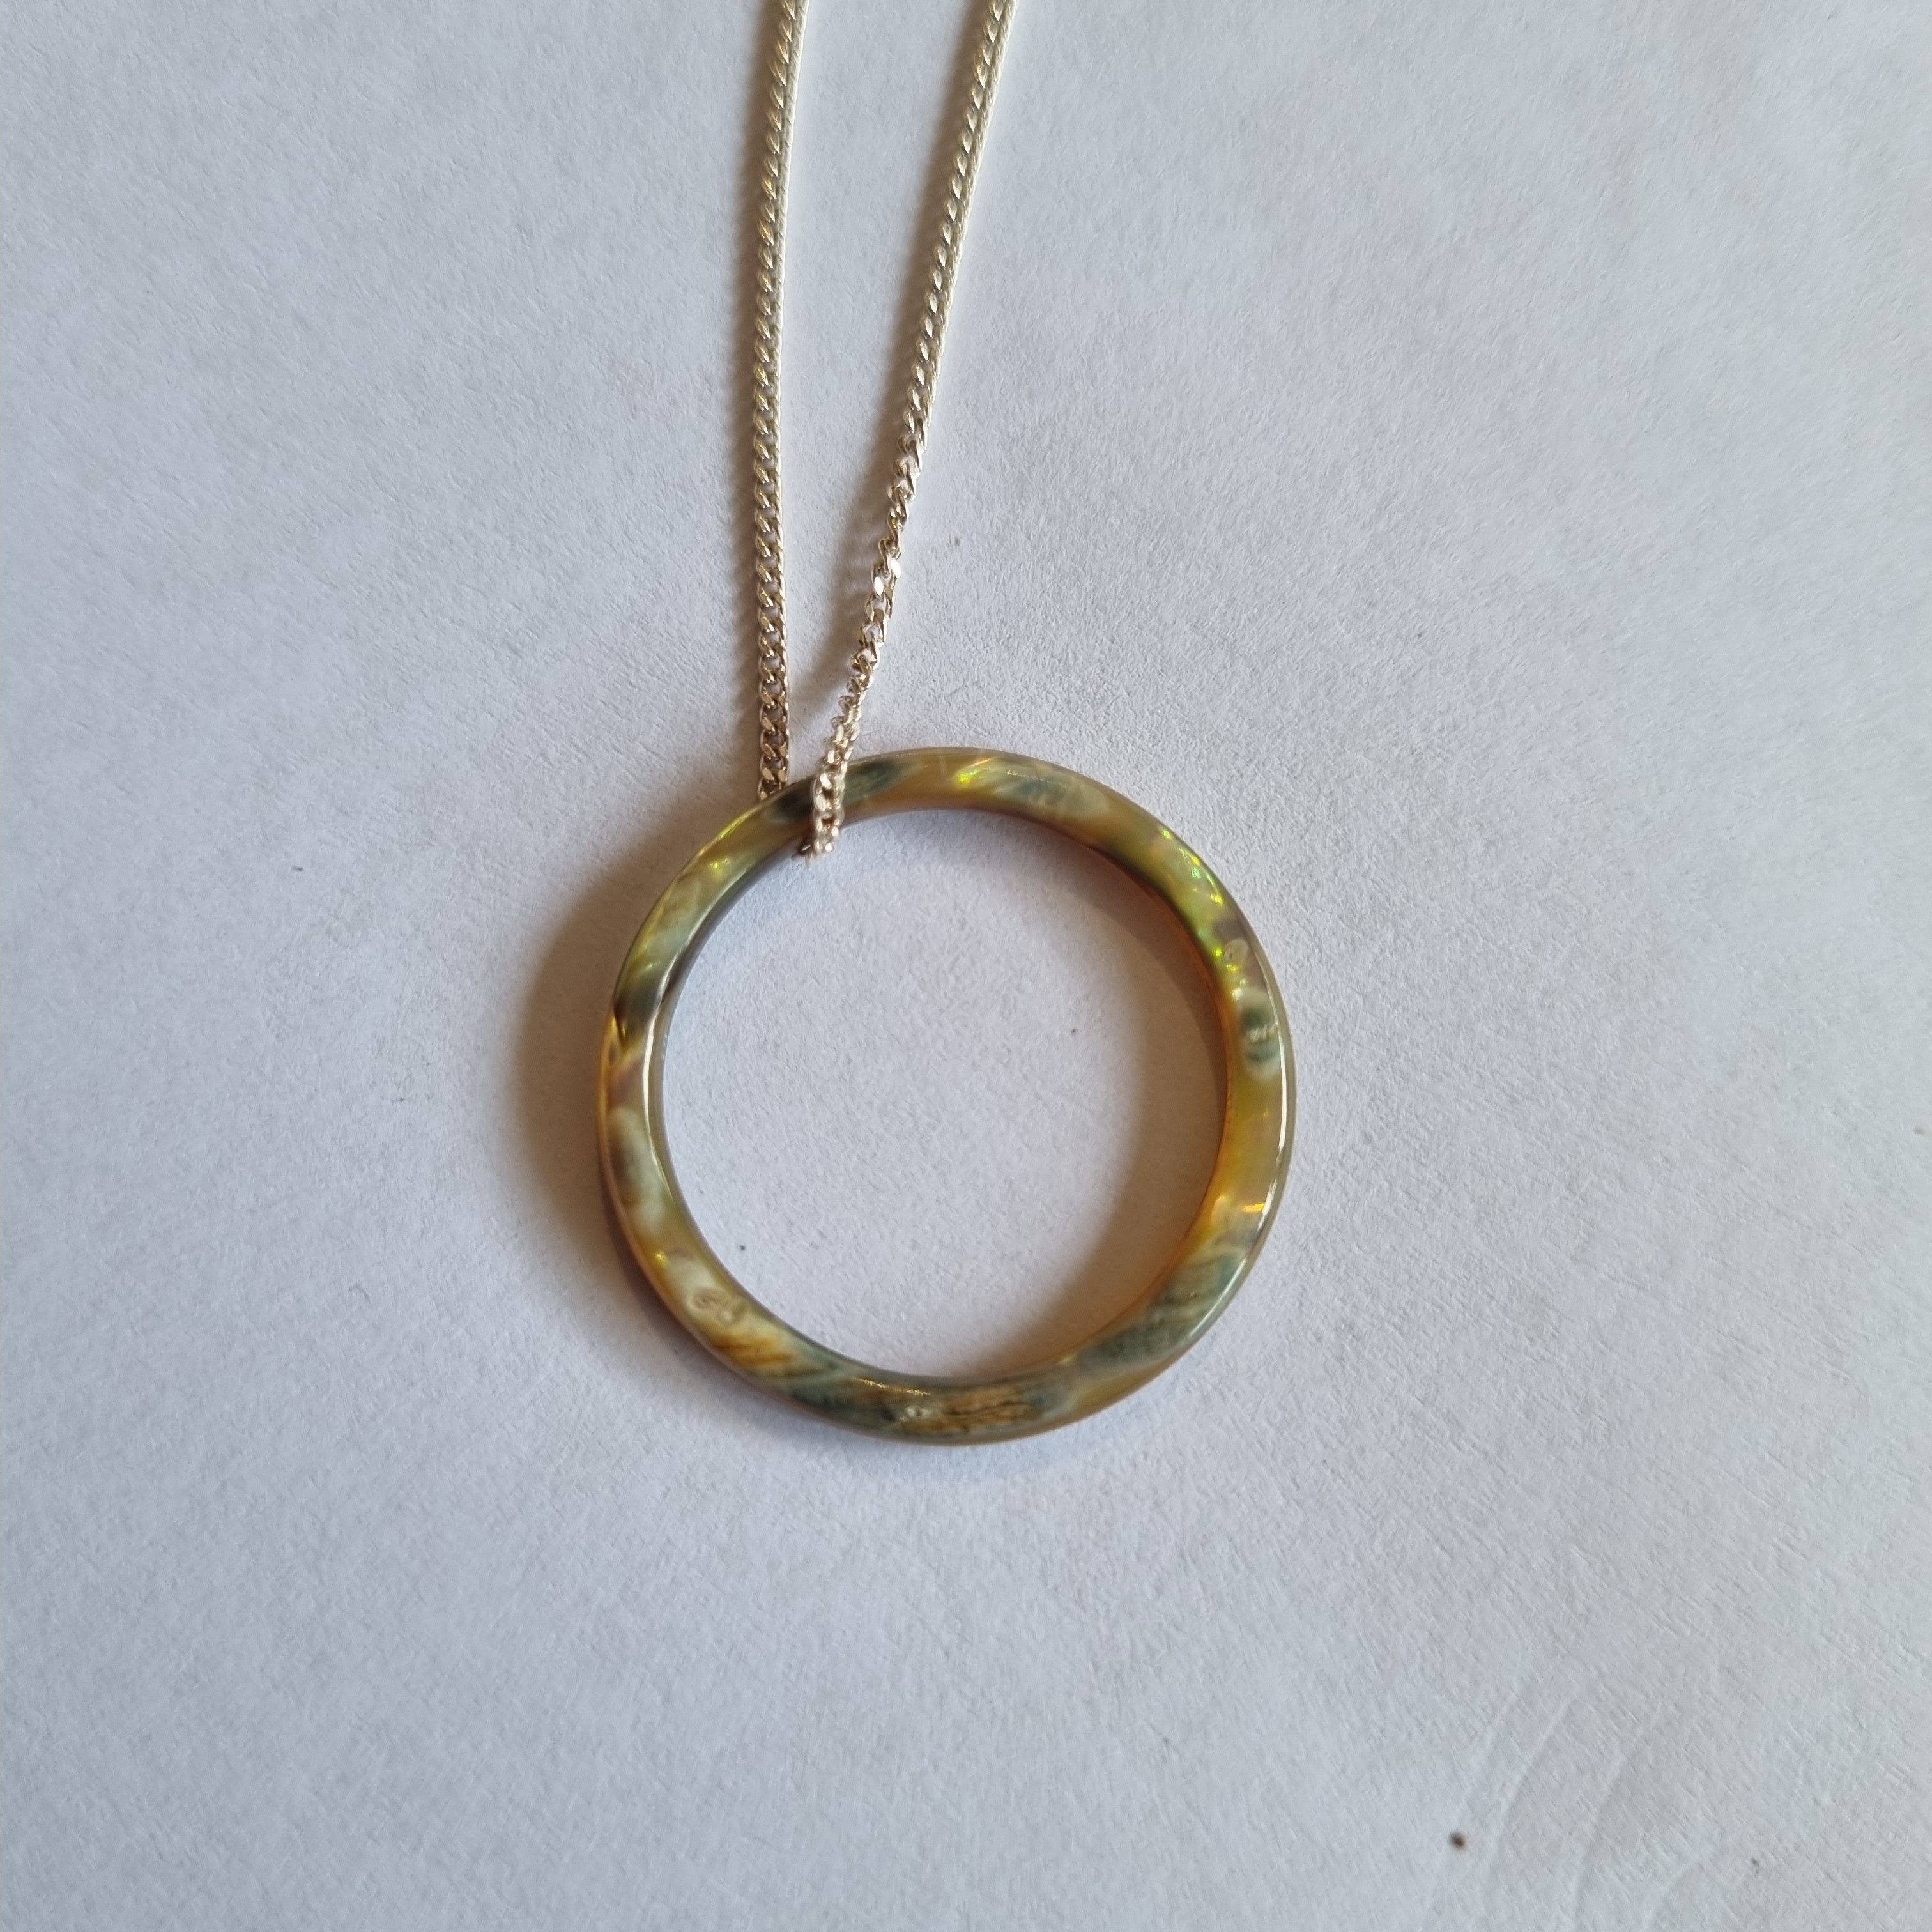 Paua Ring on silver chain